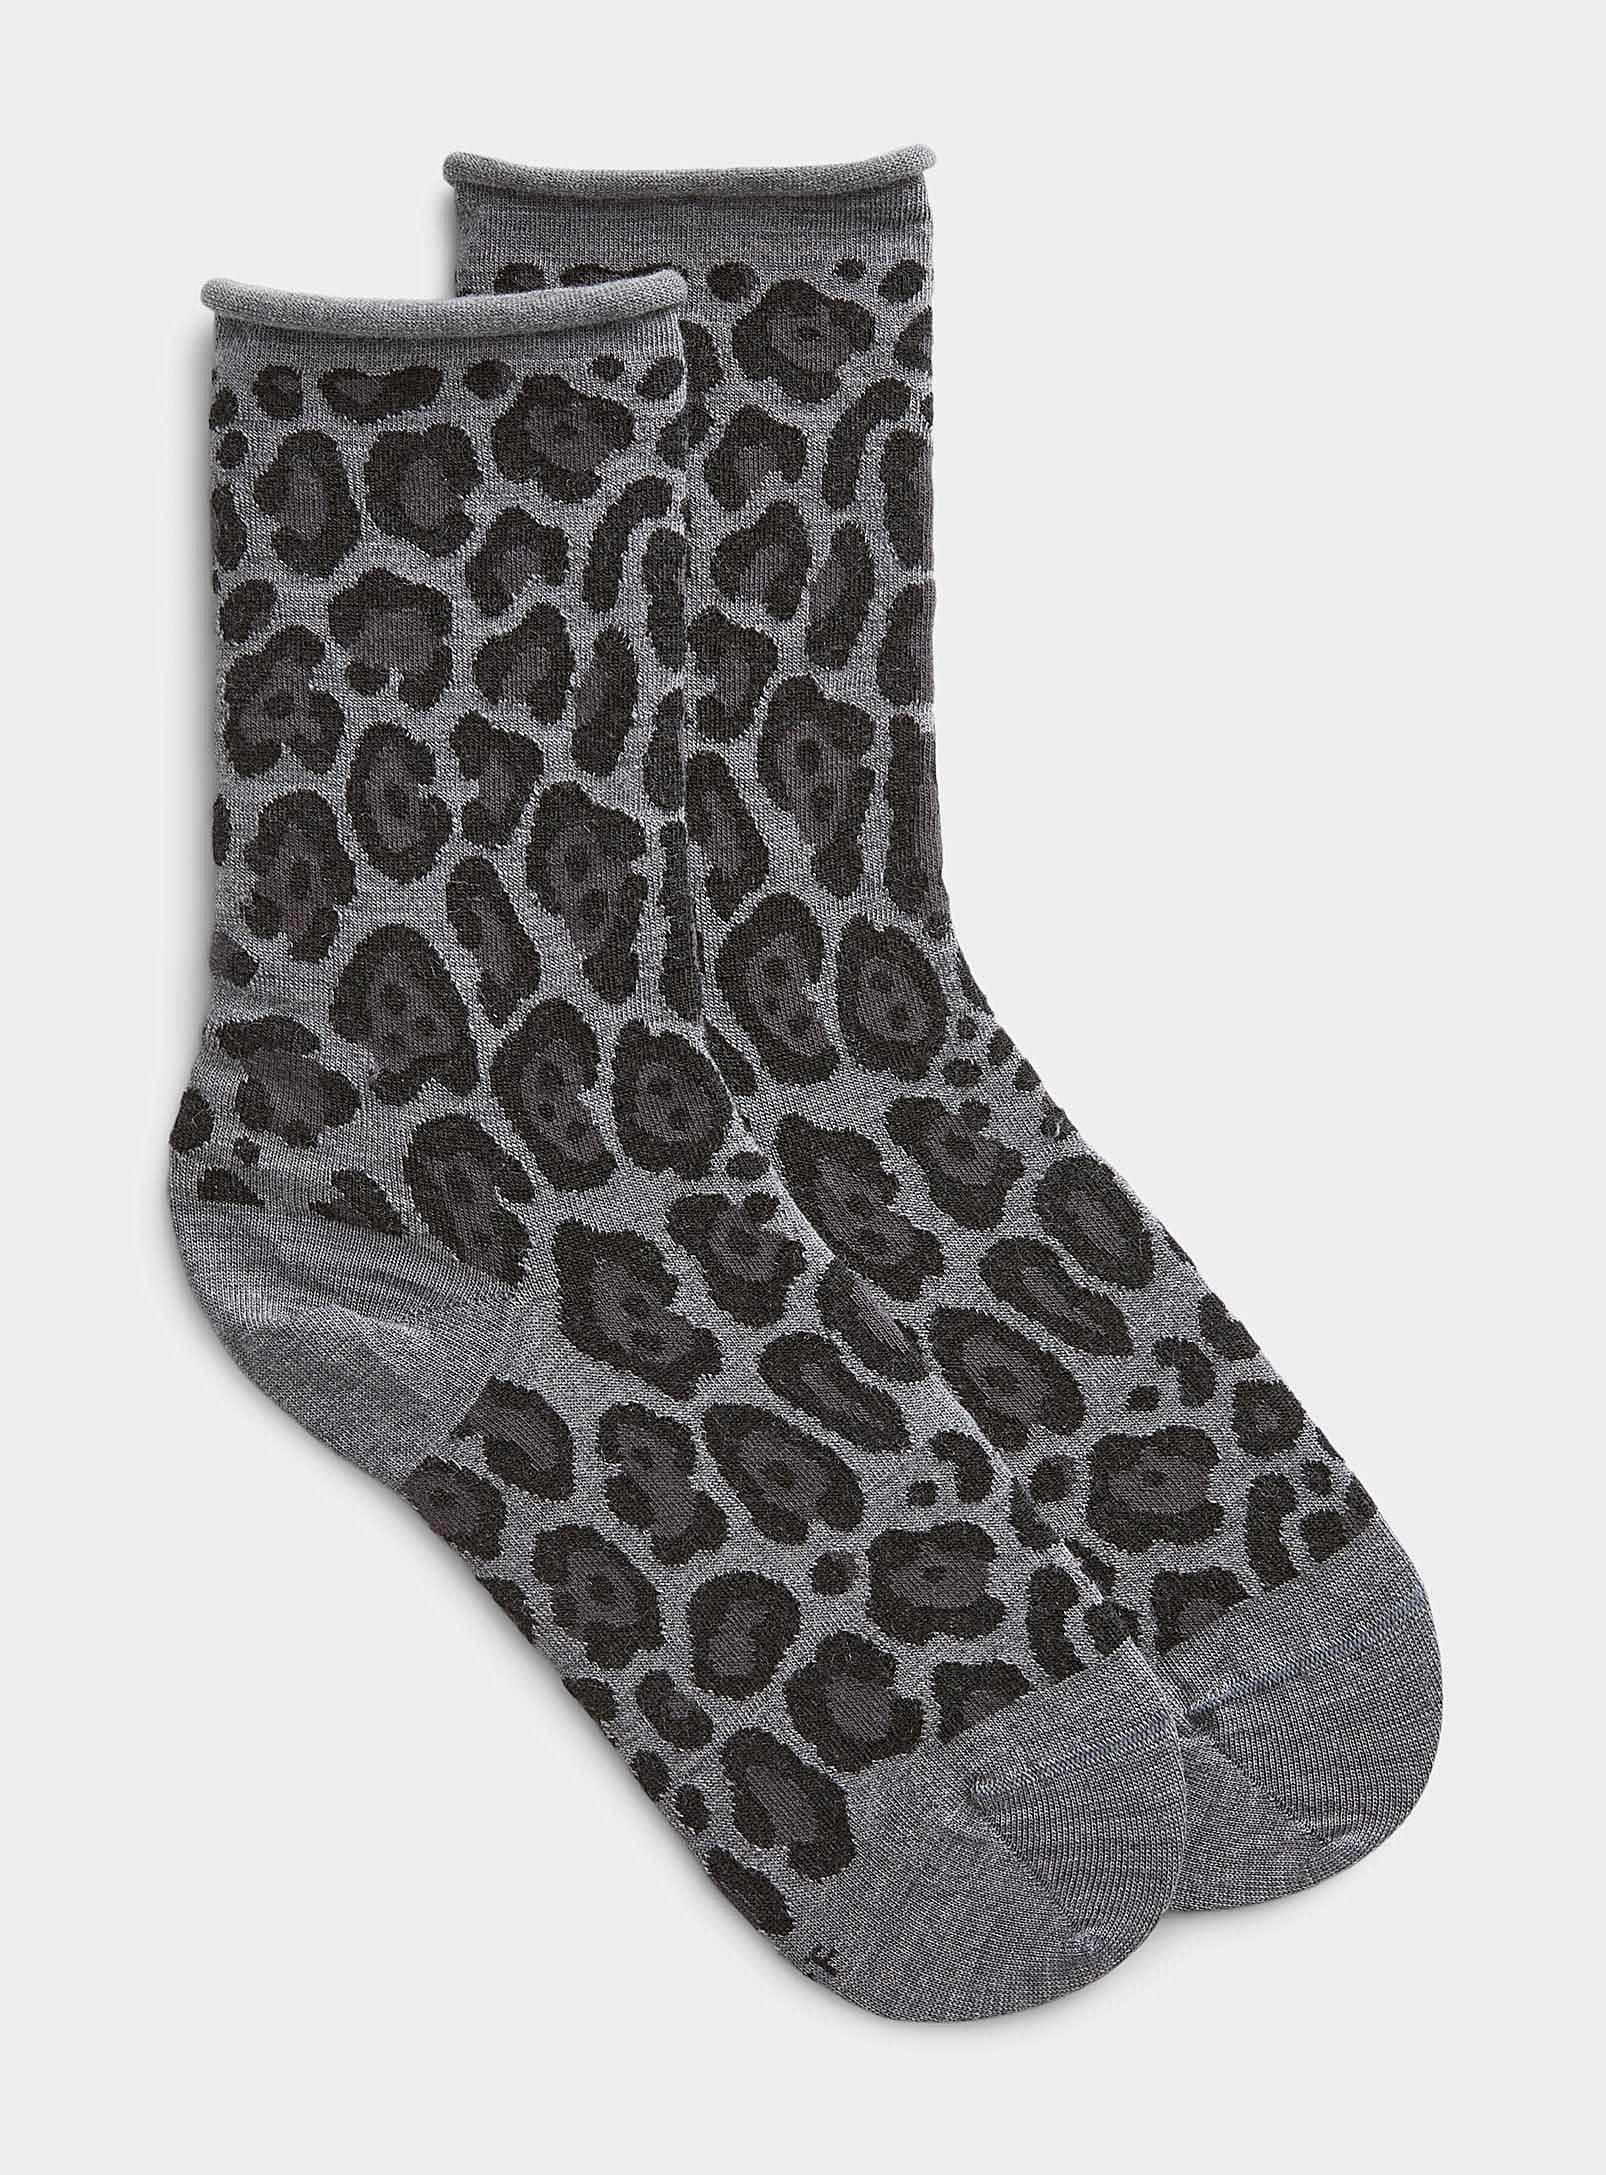 Bleuforêt Leopard Dark-hued Sock In Charcoal